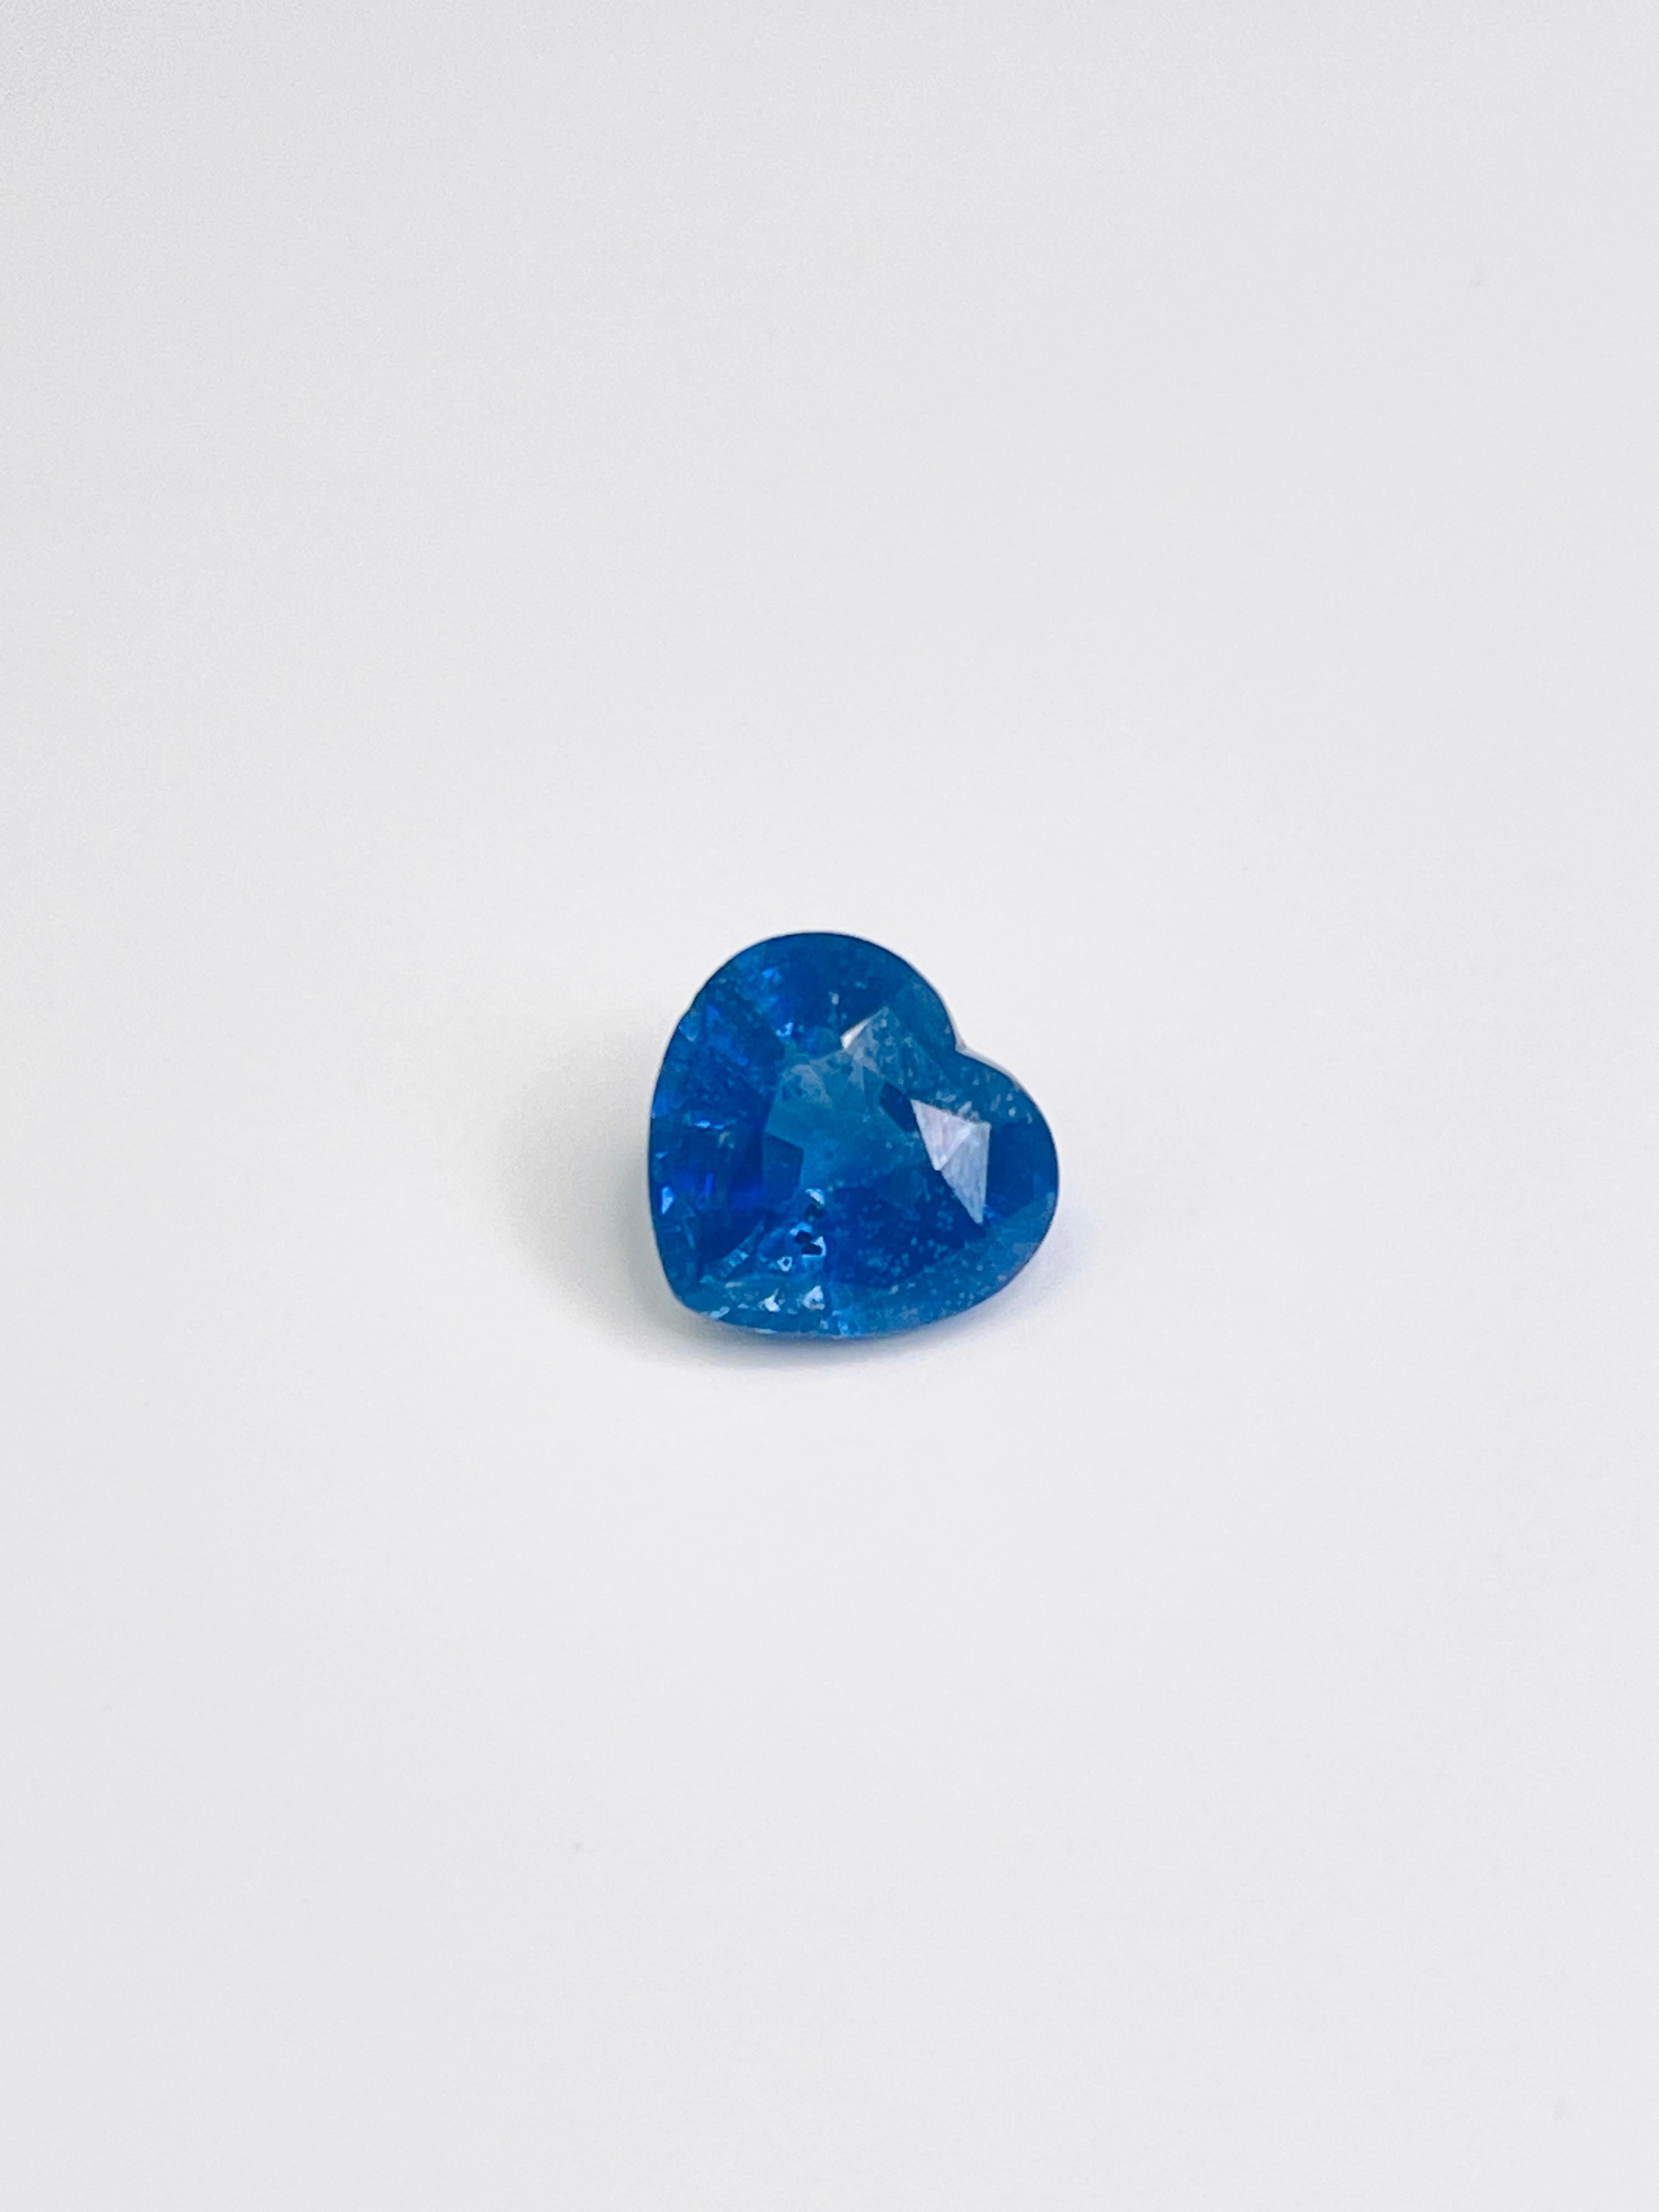 3.50 Carats intense Blue Sapphire Heart Shape Cut Loose Gem